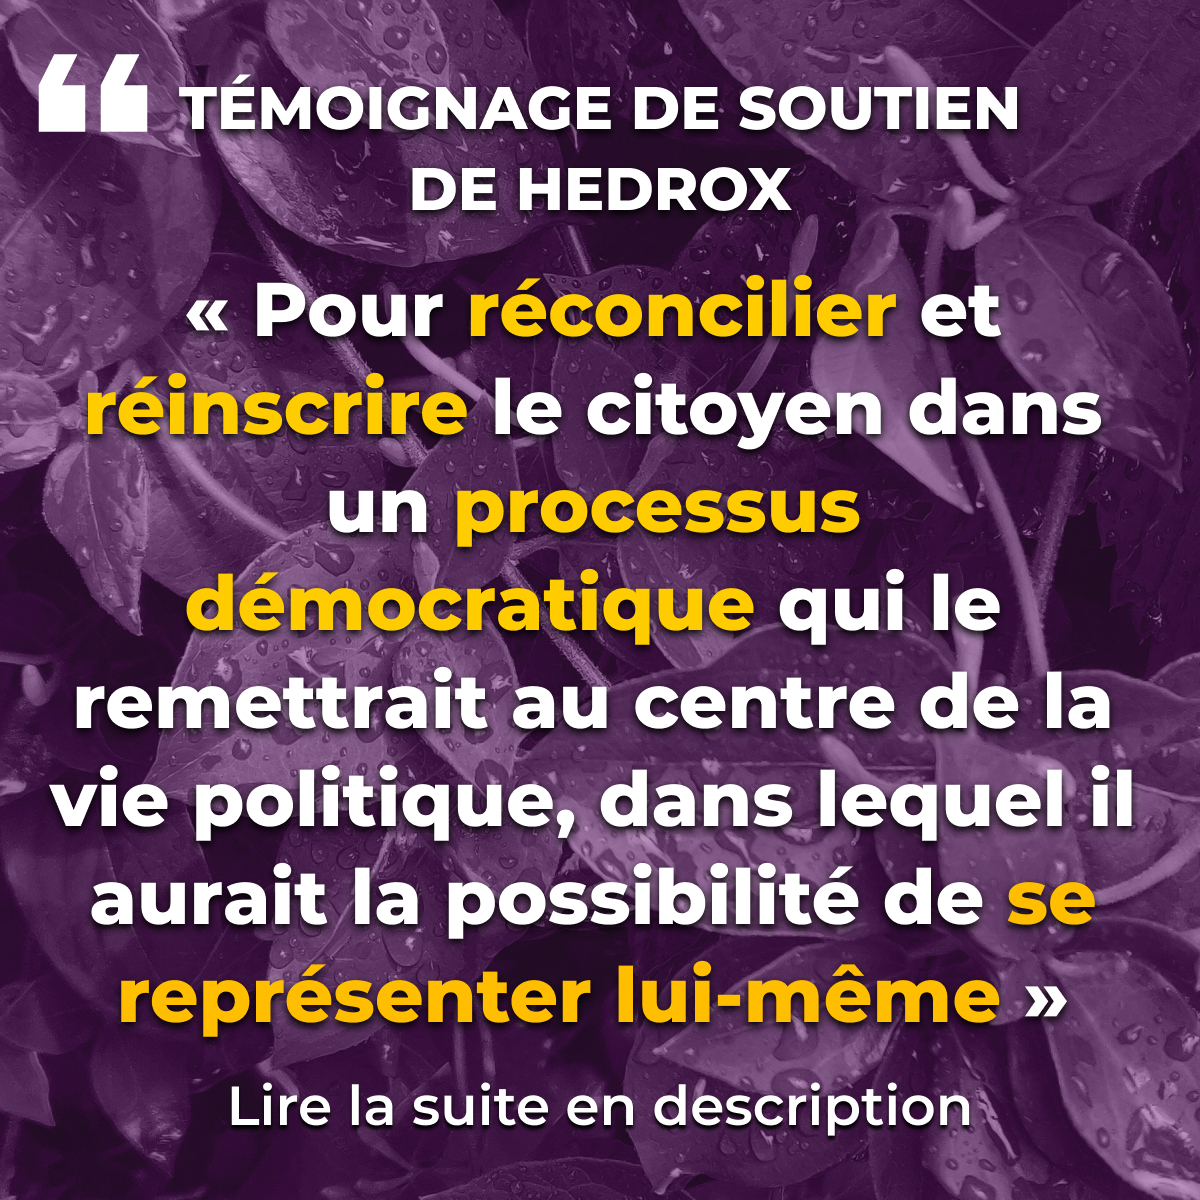 “Pour réconcilier et réinscrire le citoyen dans un processus démocratique qui le remettrait au centre de la vie politique, dans lequel il aurait la possibilité de se représenter lui-même”